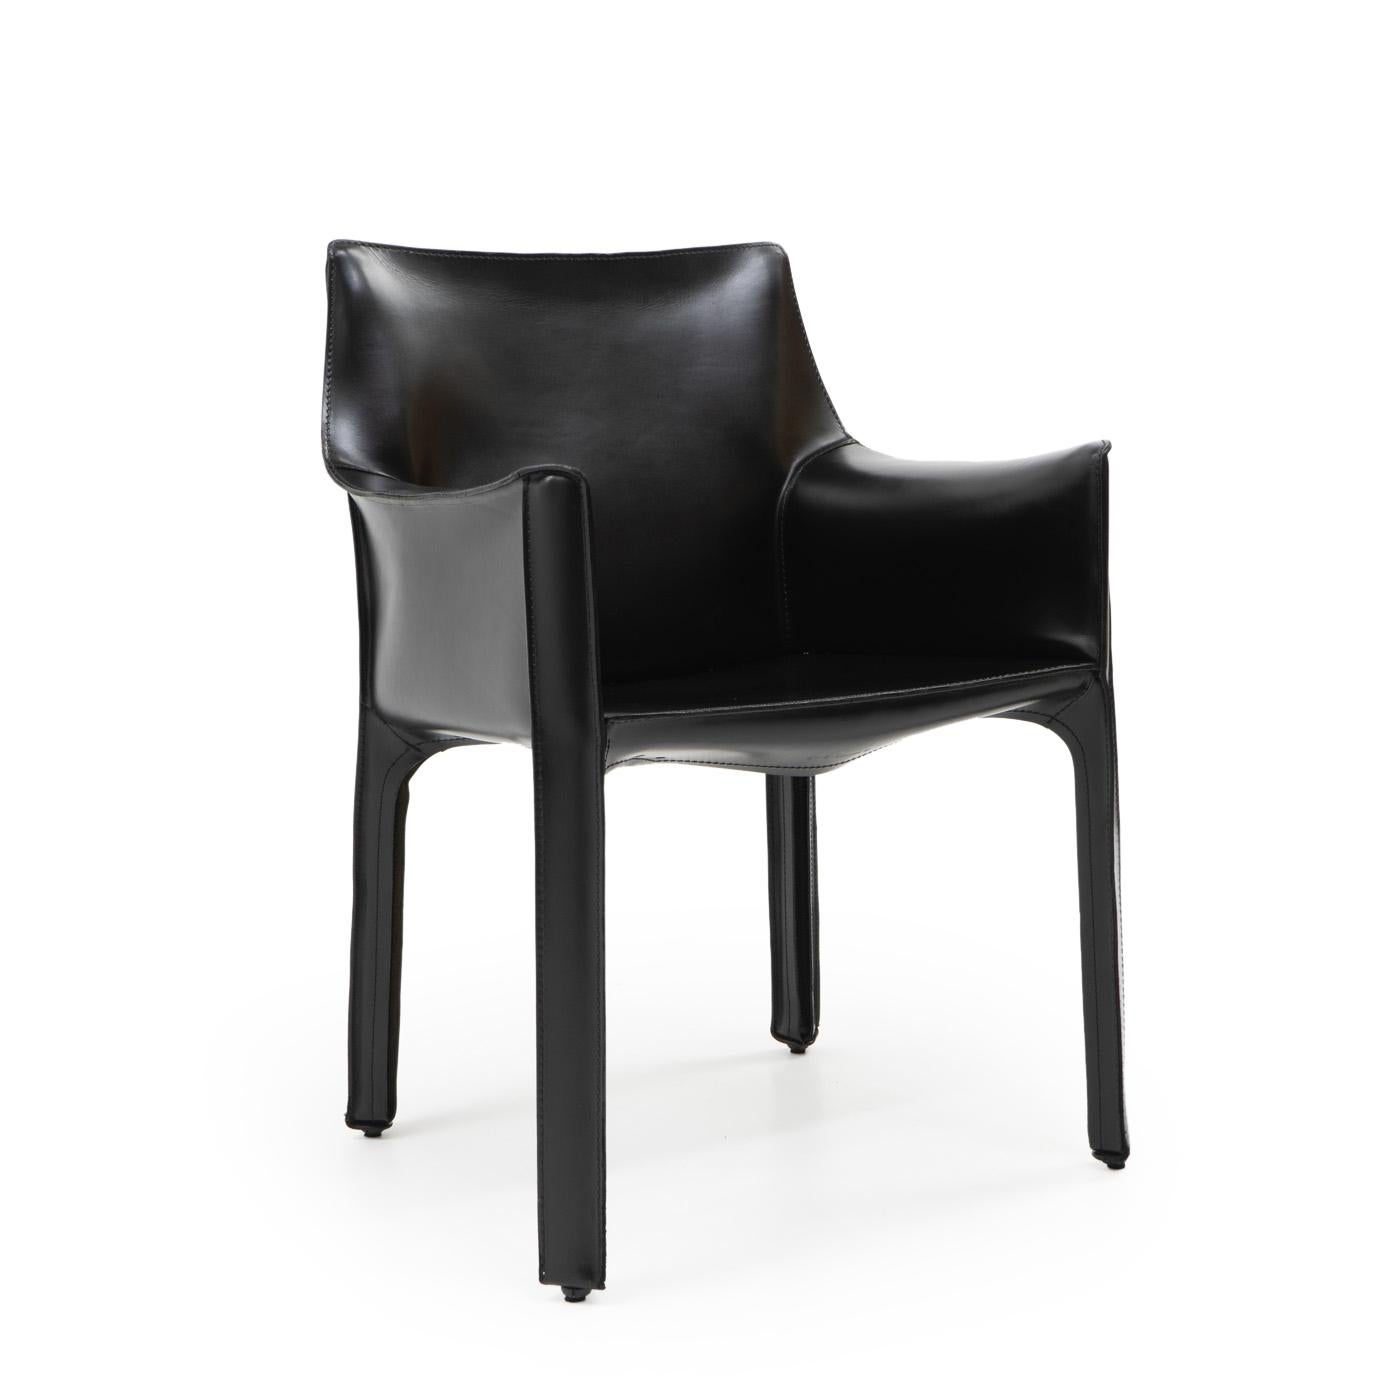 Cab 413 Sessel aus schwarzem Leder von Mario Bellini für Cassina:

Der Cab-Stuhl besteht aus einem Rohrrahmen, der mit dickem Sattelleder überzogen ist; die Lederhaut wird mit Reißverschlüssen an den Innenseiten der Beine fixiert.

Ein wunderschönes